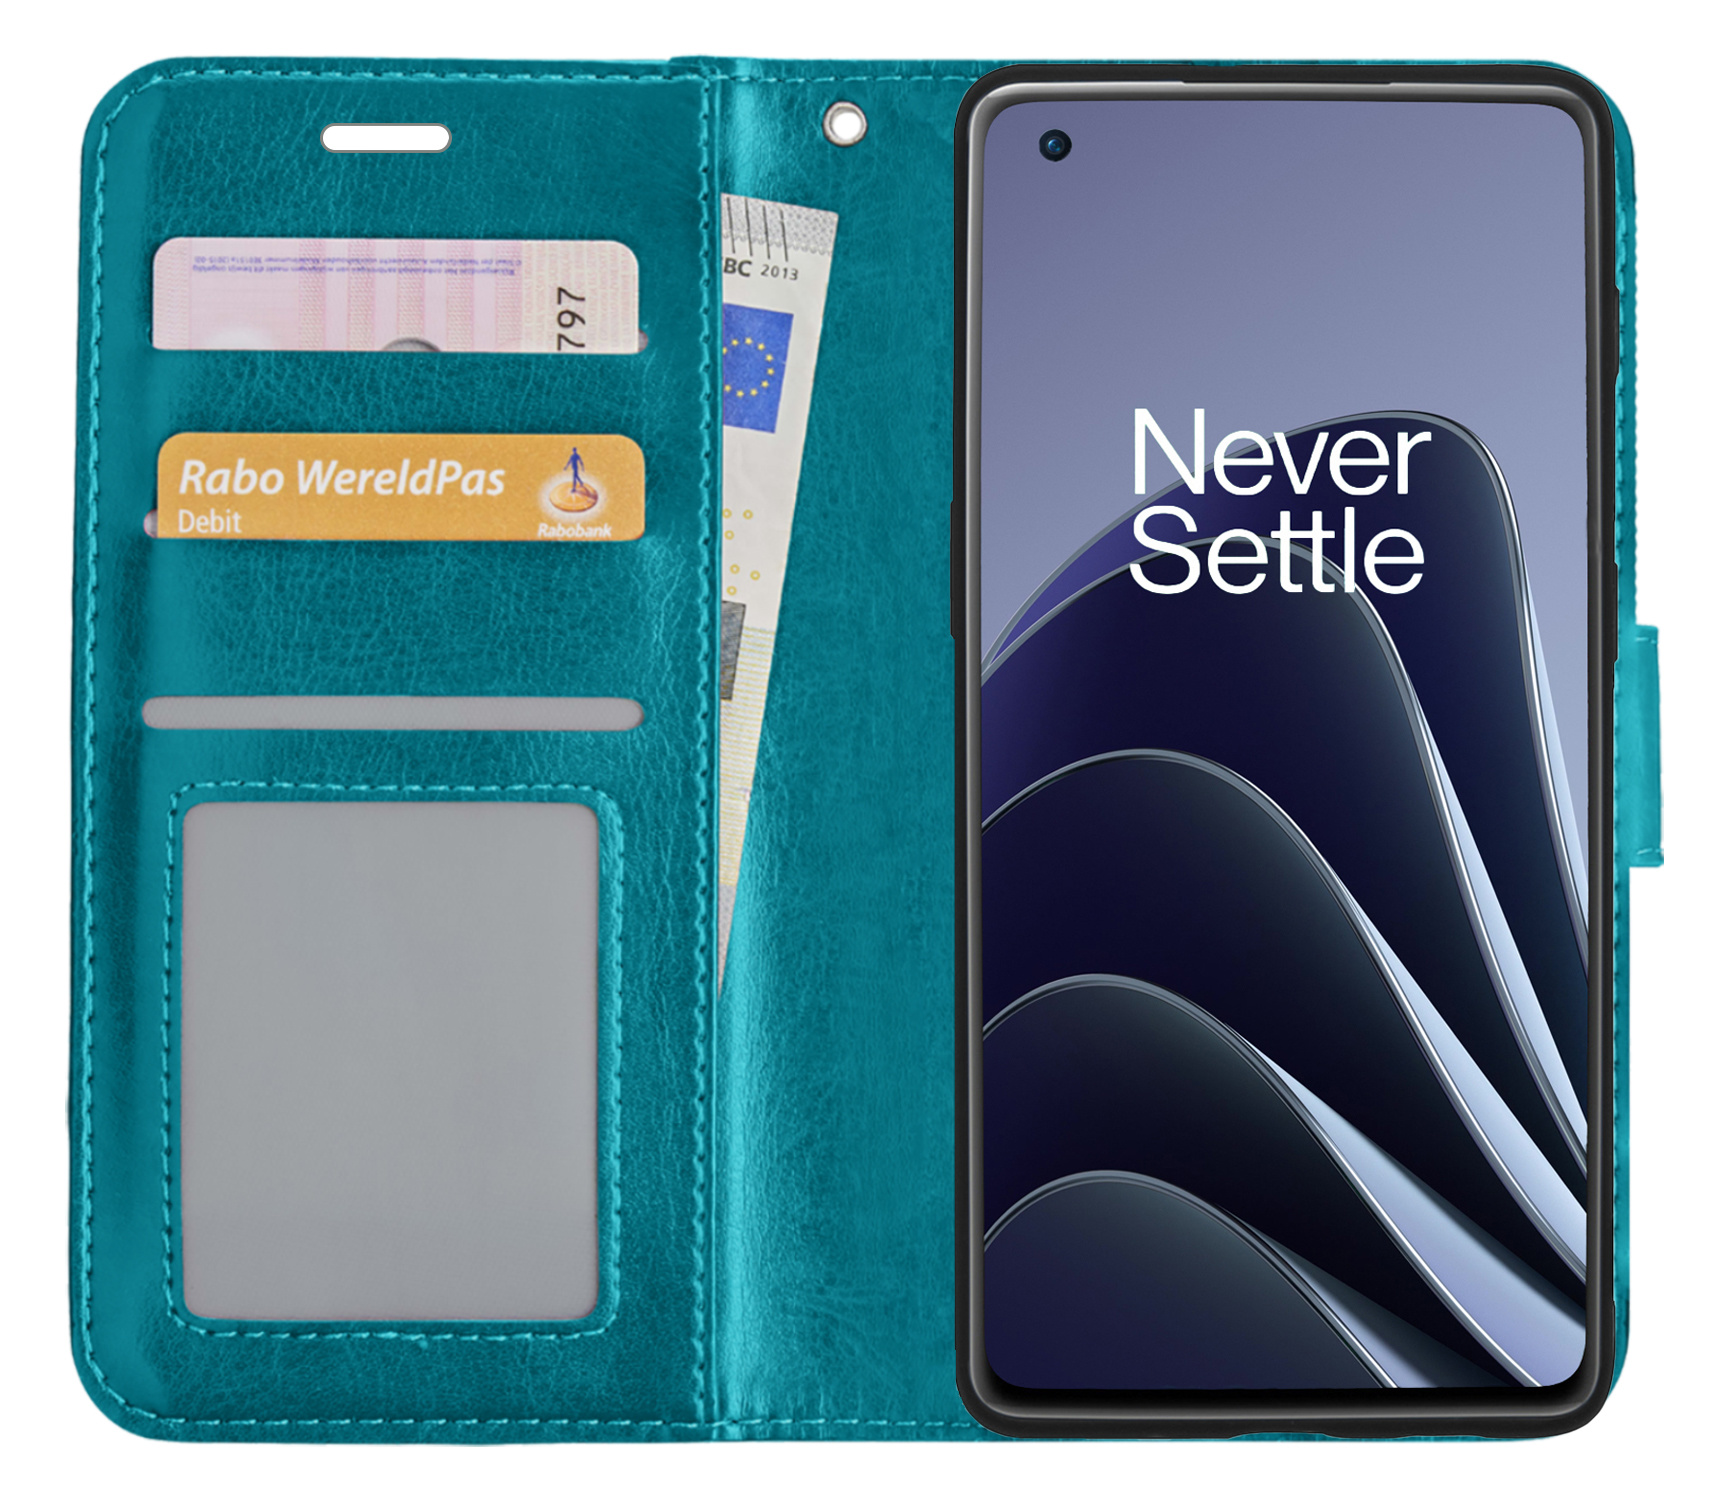 BASEY. OnePlus 10 Pro Hoesje Bookcase - OnePlus 10 Pro Hoes Flip Case Book Cover - OnePlus 10 Pro Hoes Book Case Turquoise